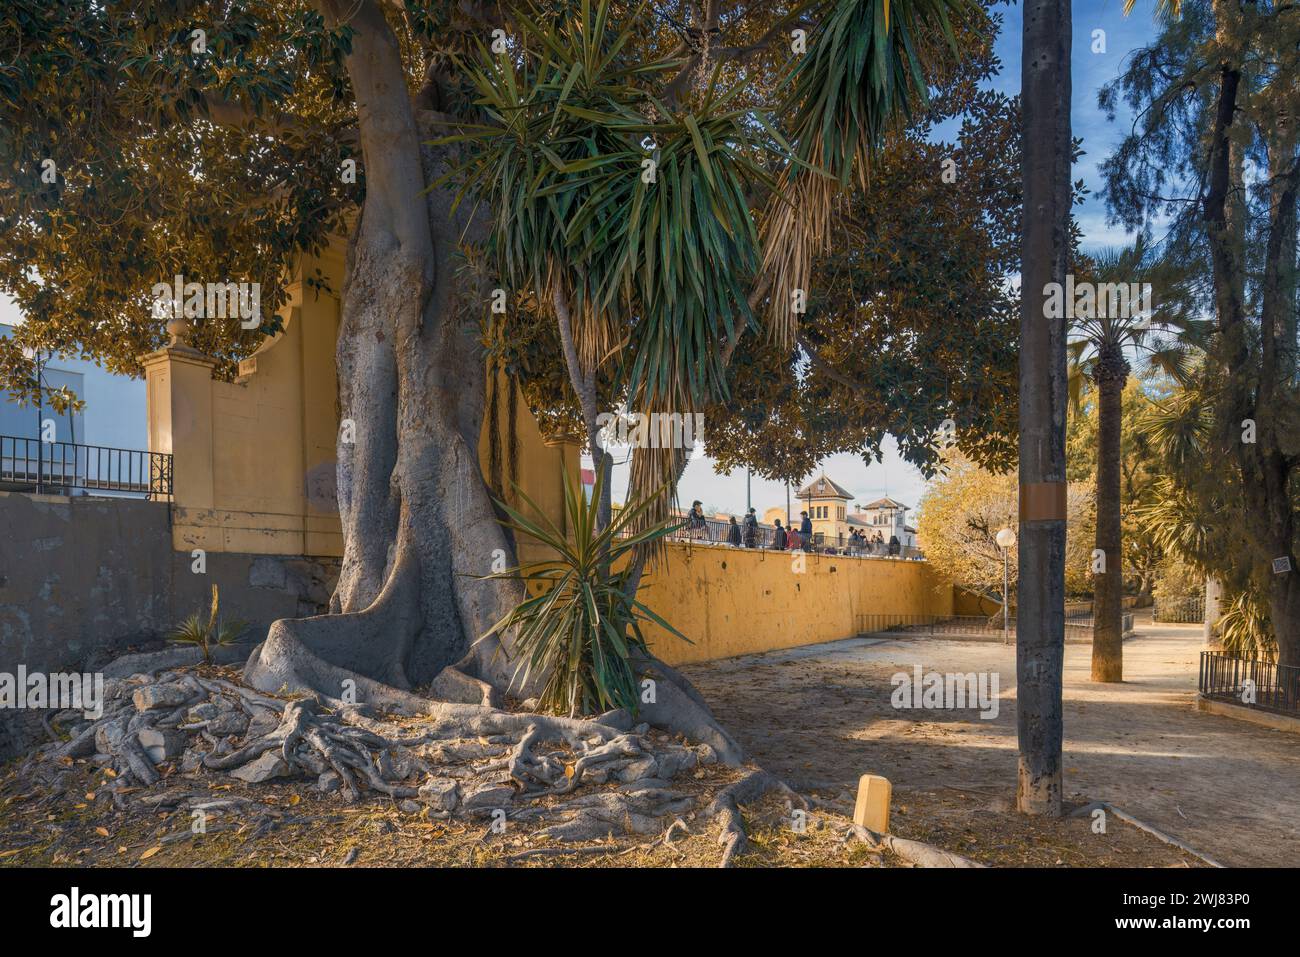 Beaucoup de grandes racines extérieures délimitées dans le grand lit d'eucalyptus dans le célèbre parc de jardin Malecon dans la capitale de la région de Murcie, Espagne, Europe. Banque D'Images